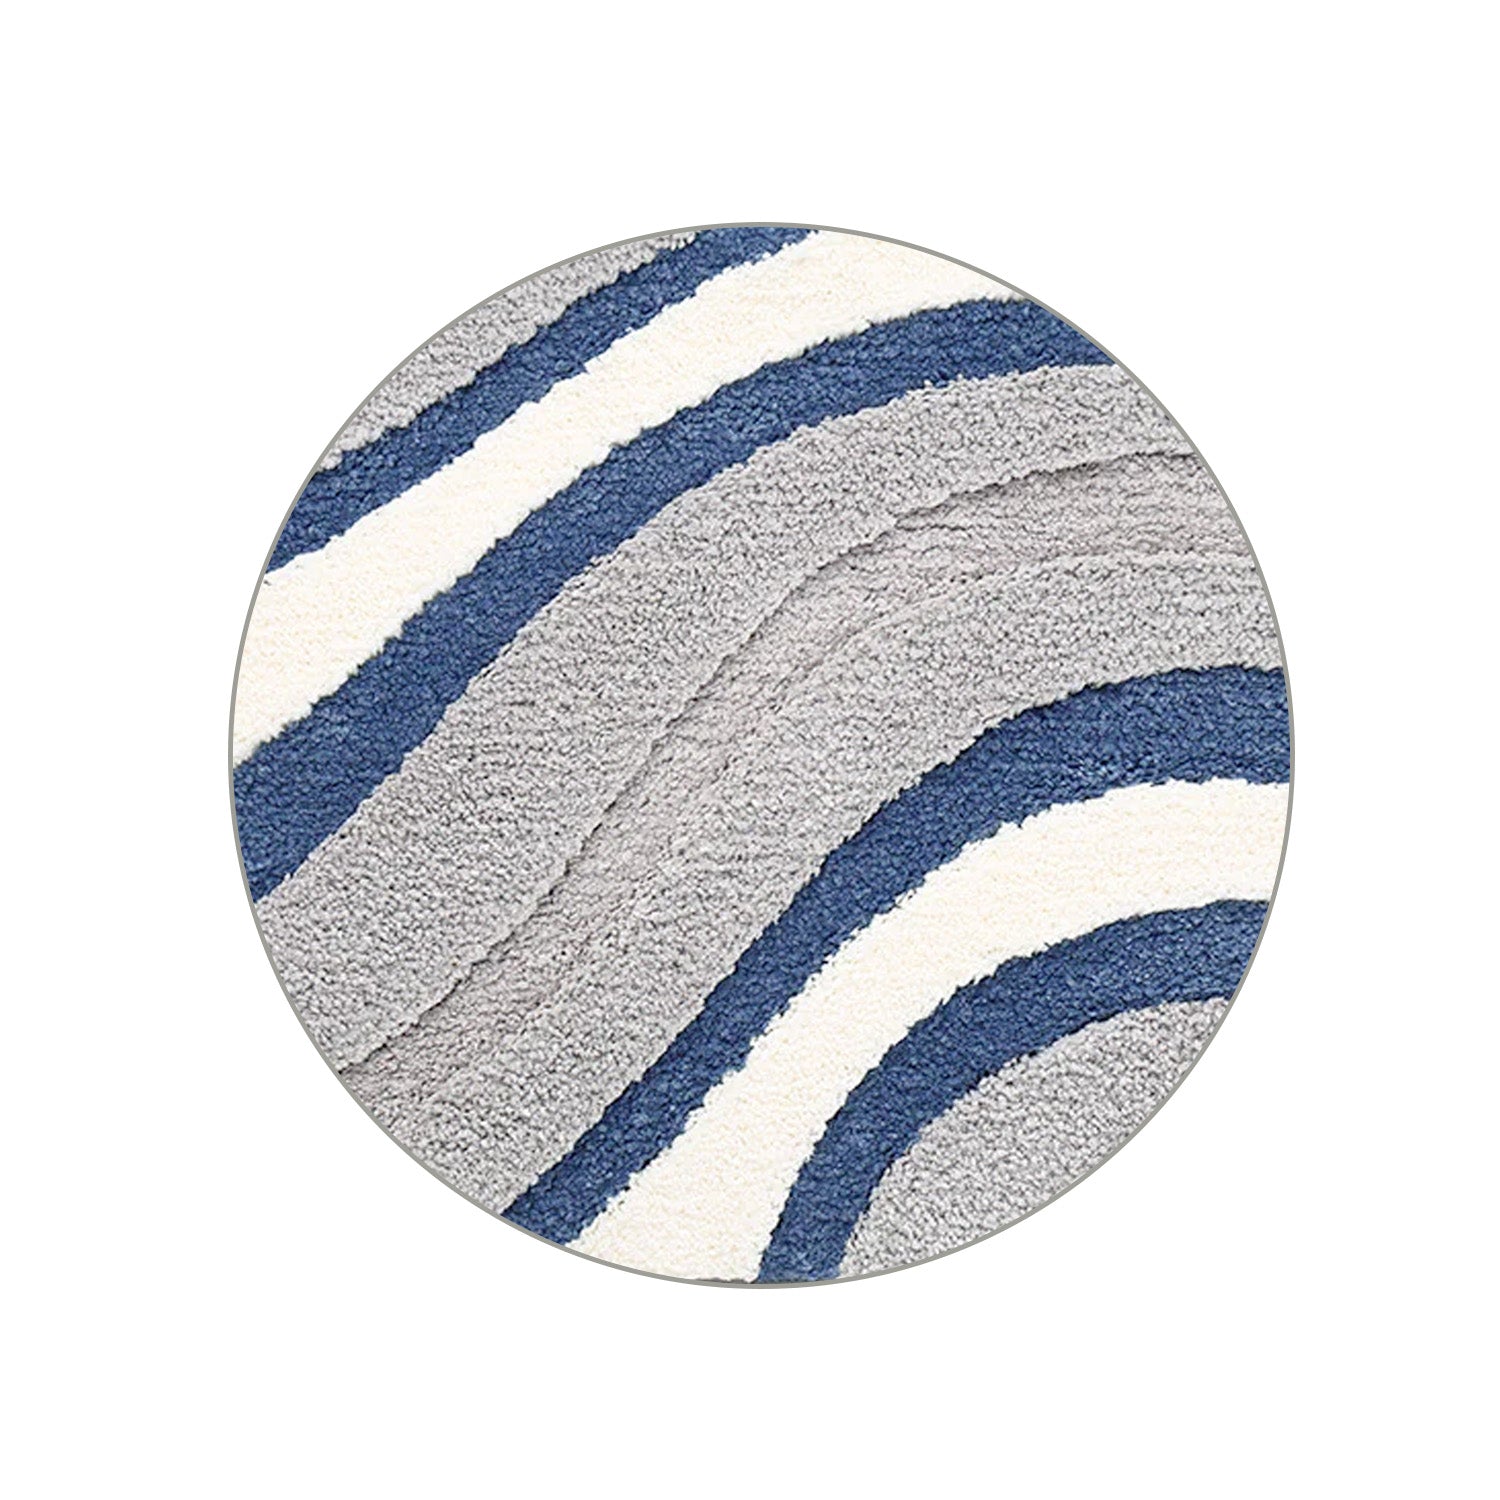 Feblilac Abstract Grey White Blue Wave Bath Mat - Feblilac® Mat